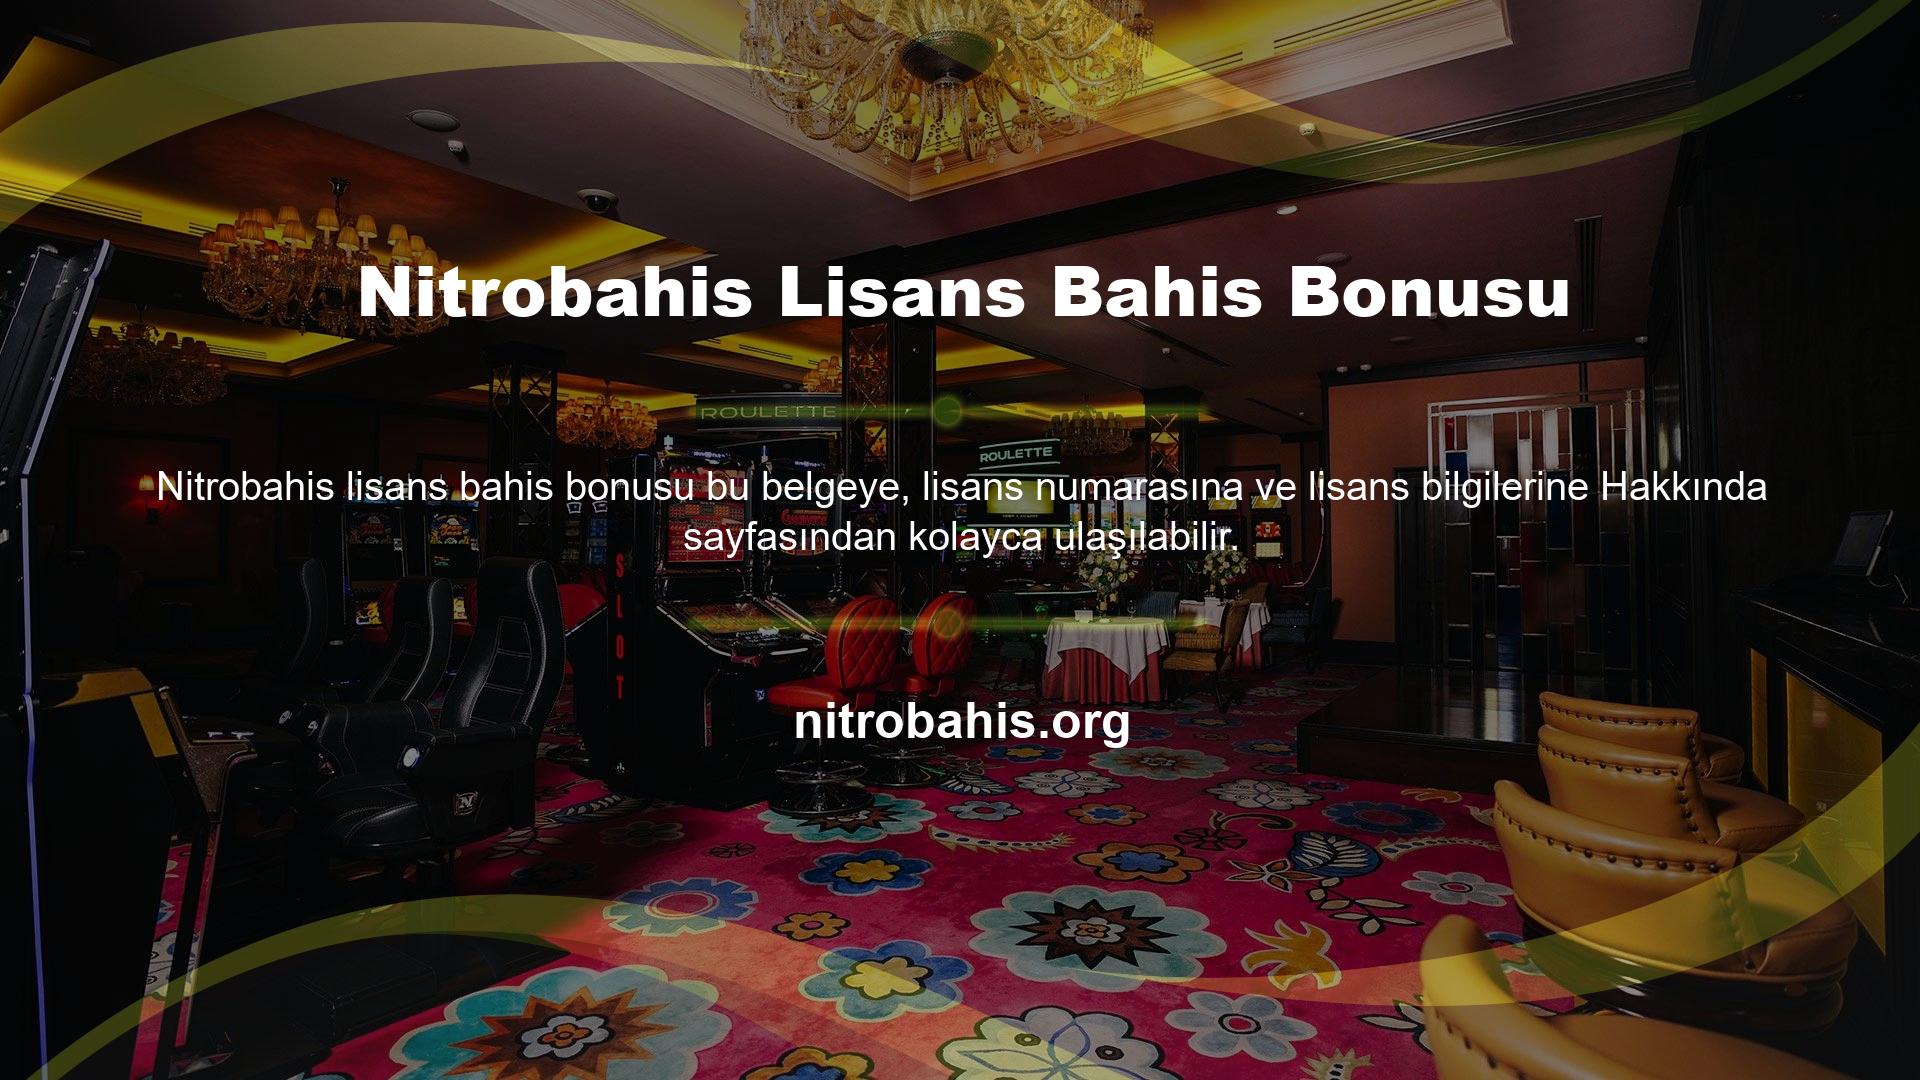 Bunun, bu alandaki en başarılı Nitrobahis Lisanslı bahis bonusu özel markalarından biri olduğunu unutmayın